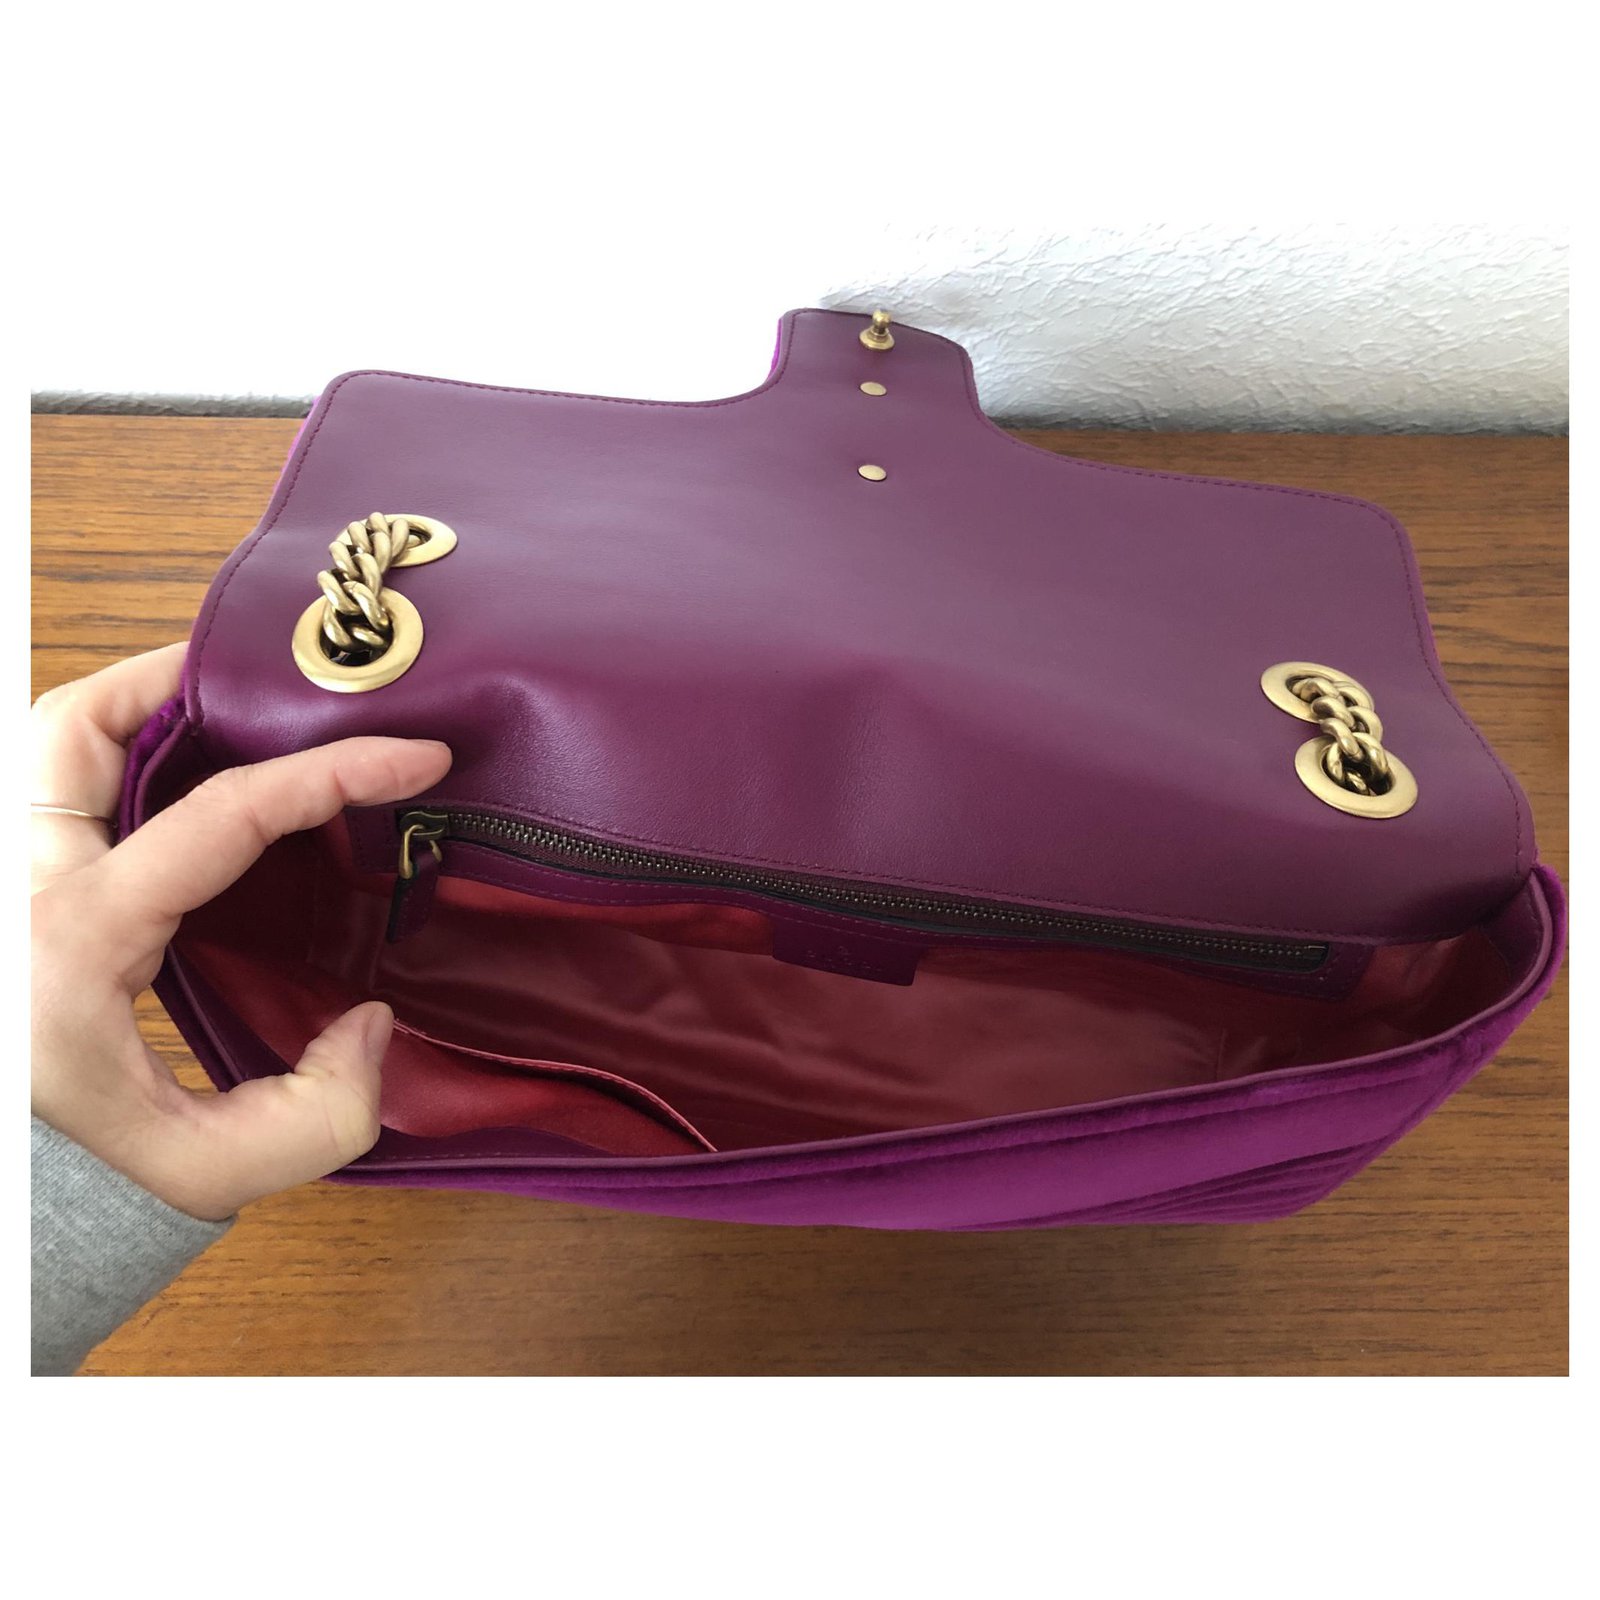 Gucci Handtaschen aus Samt - Lila - 35557575